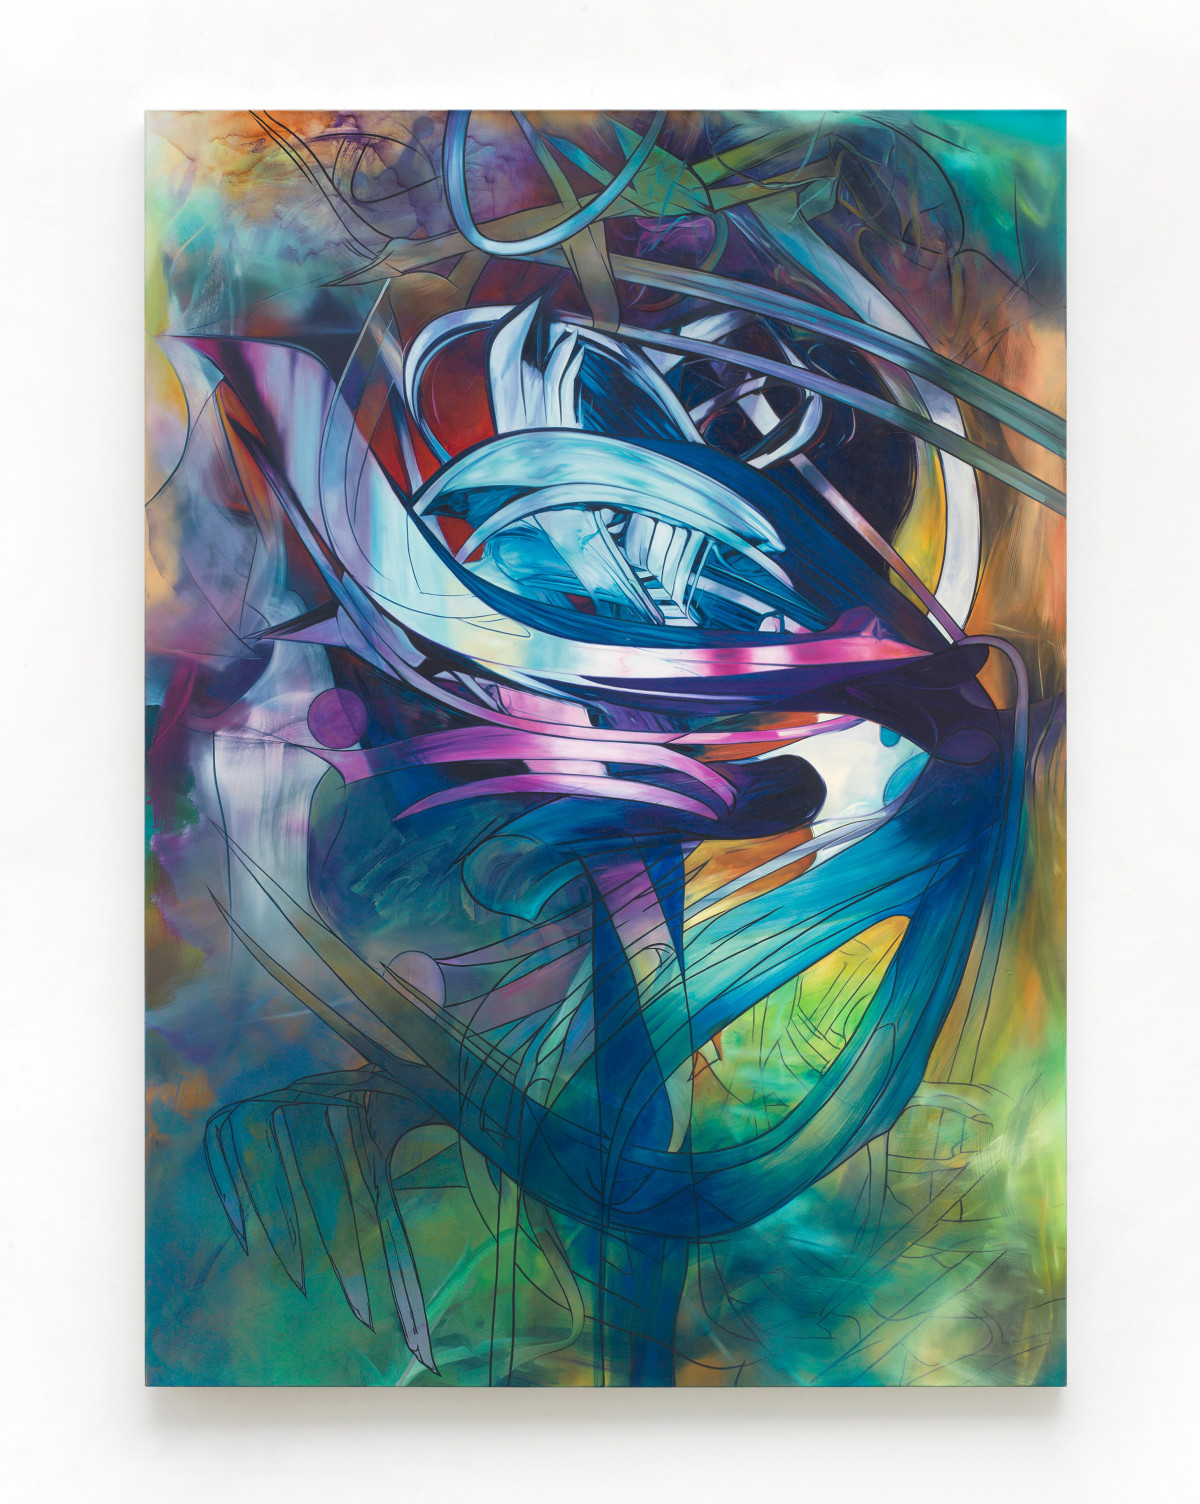 Sean Dawson, ‘Ghost Ribbons’, 2013, oil on canvas